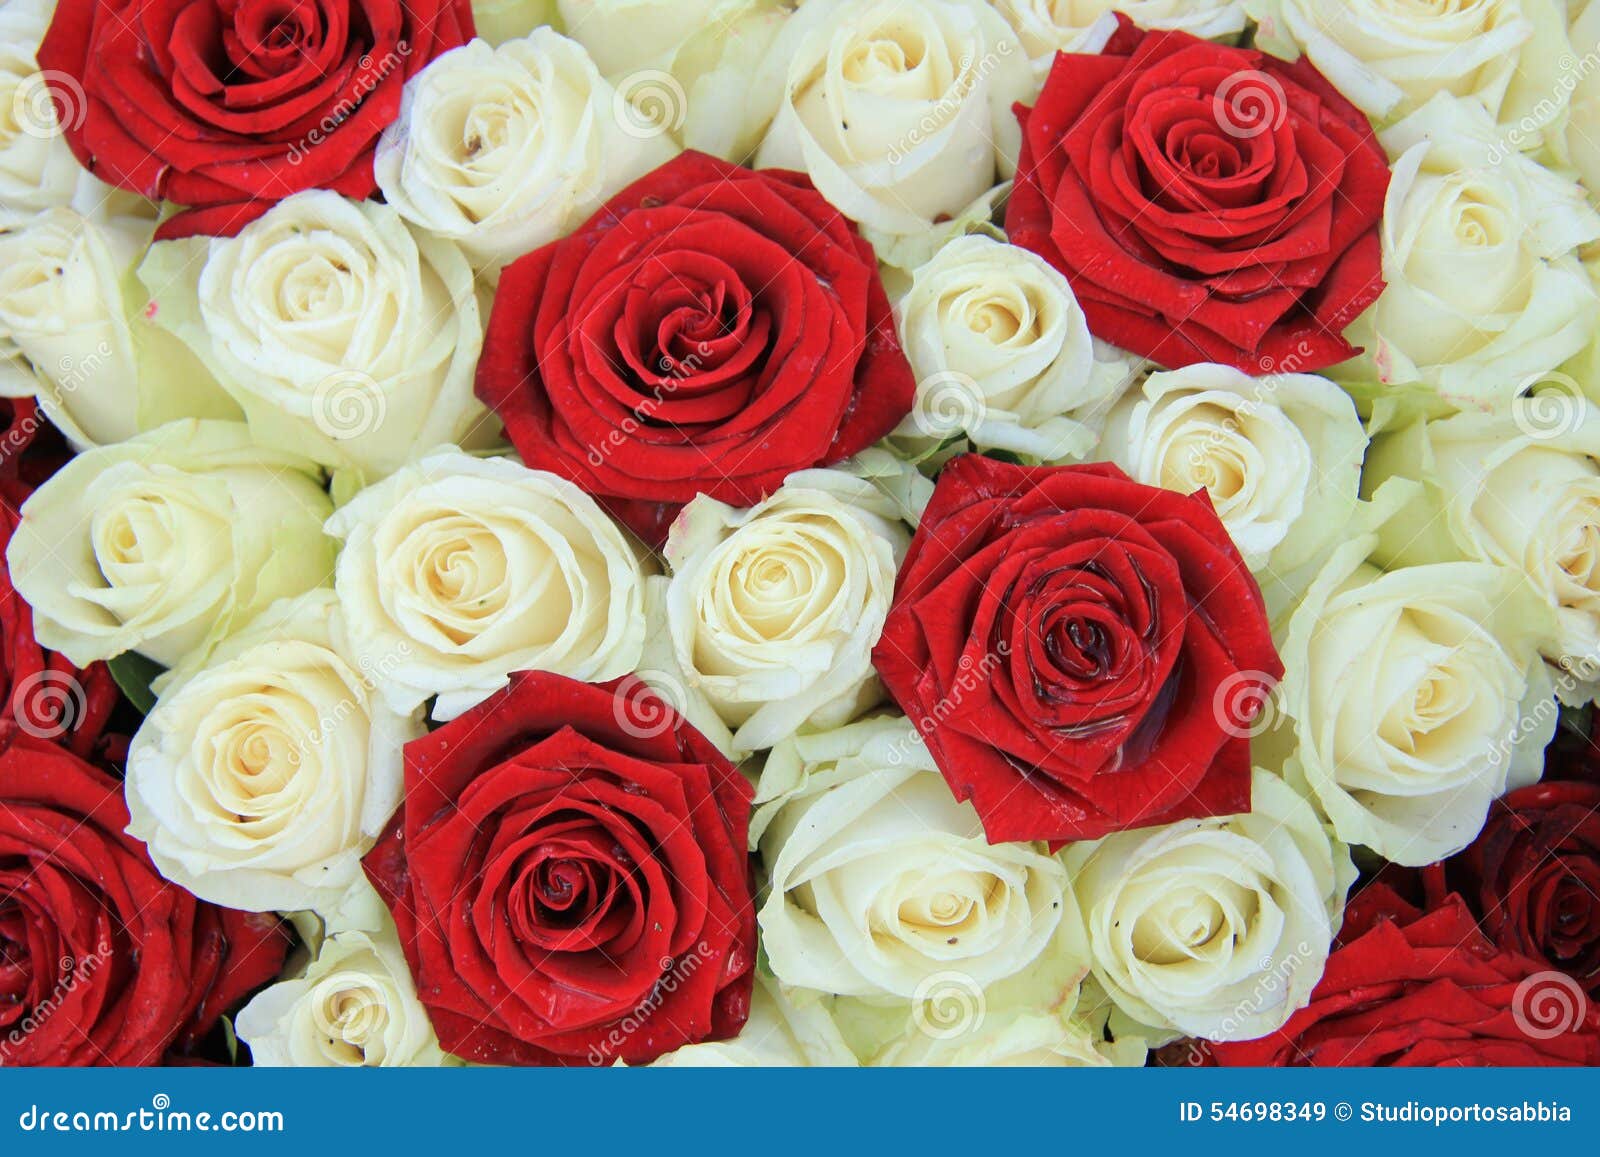 Rosas Rojas Y Blancas En Un Arreglo De La Boda Imagen de archivo - Imagen  de detalle, flores: 54698349